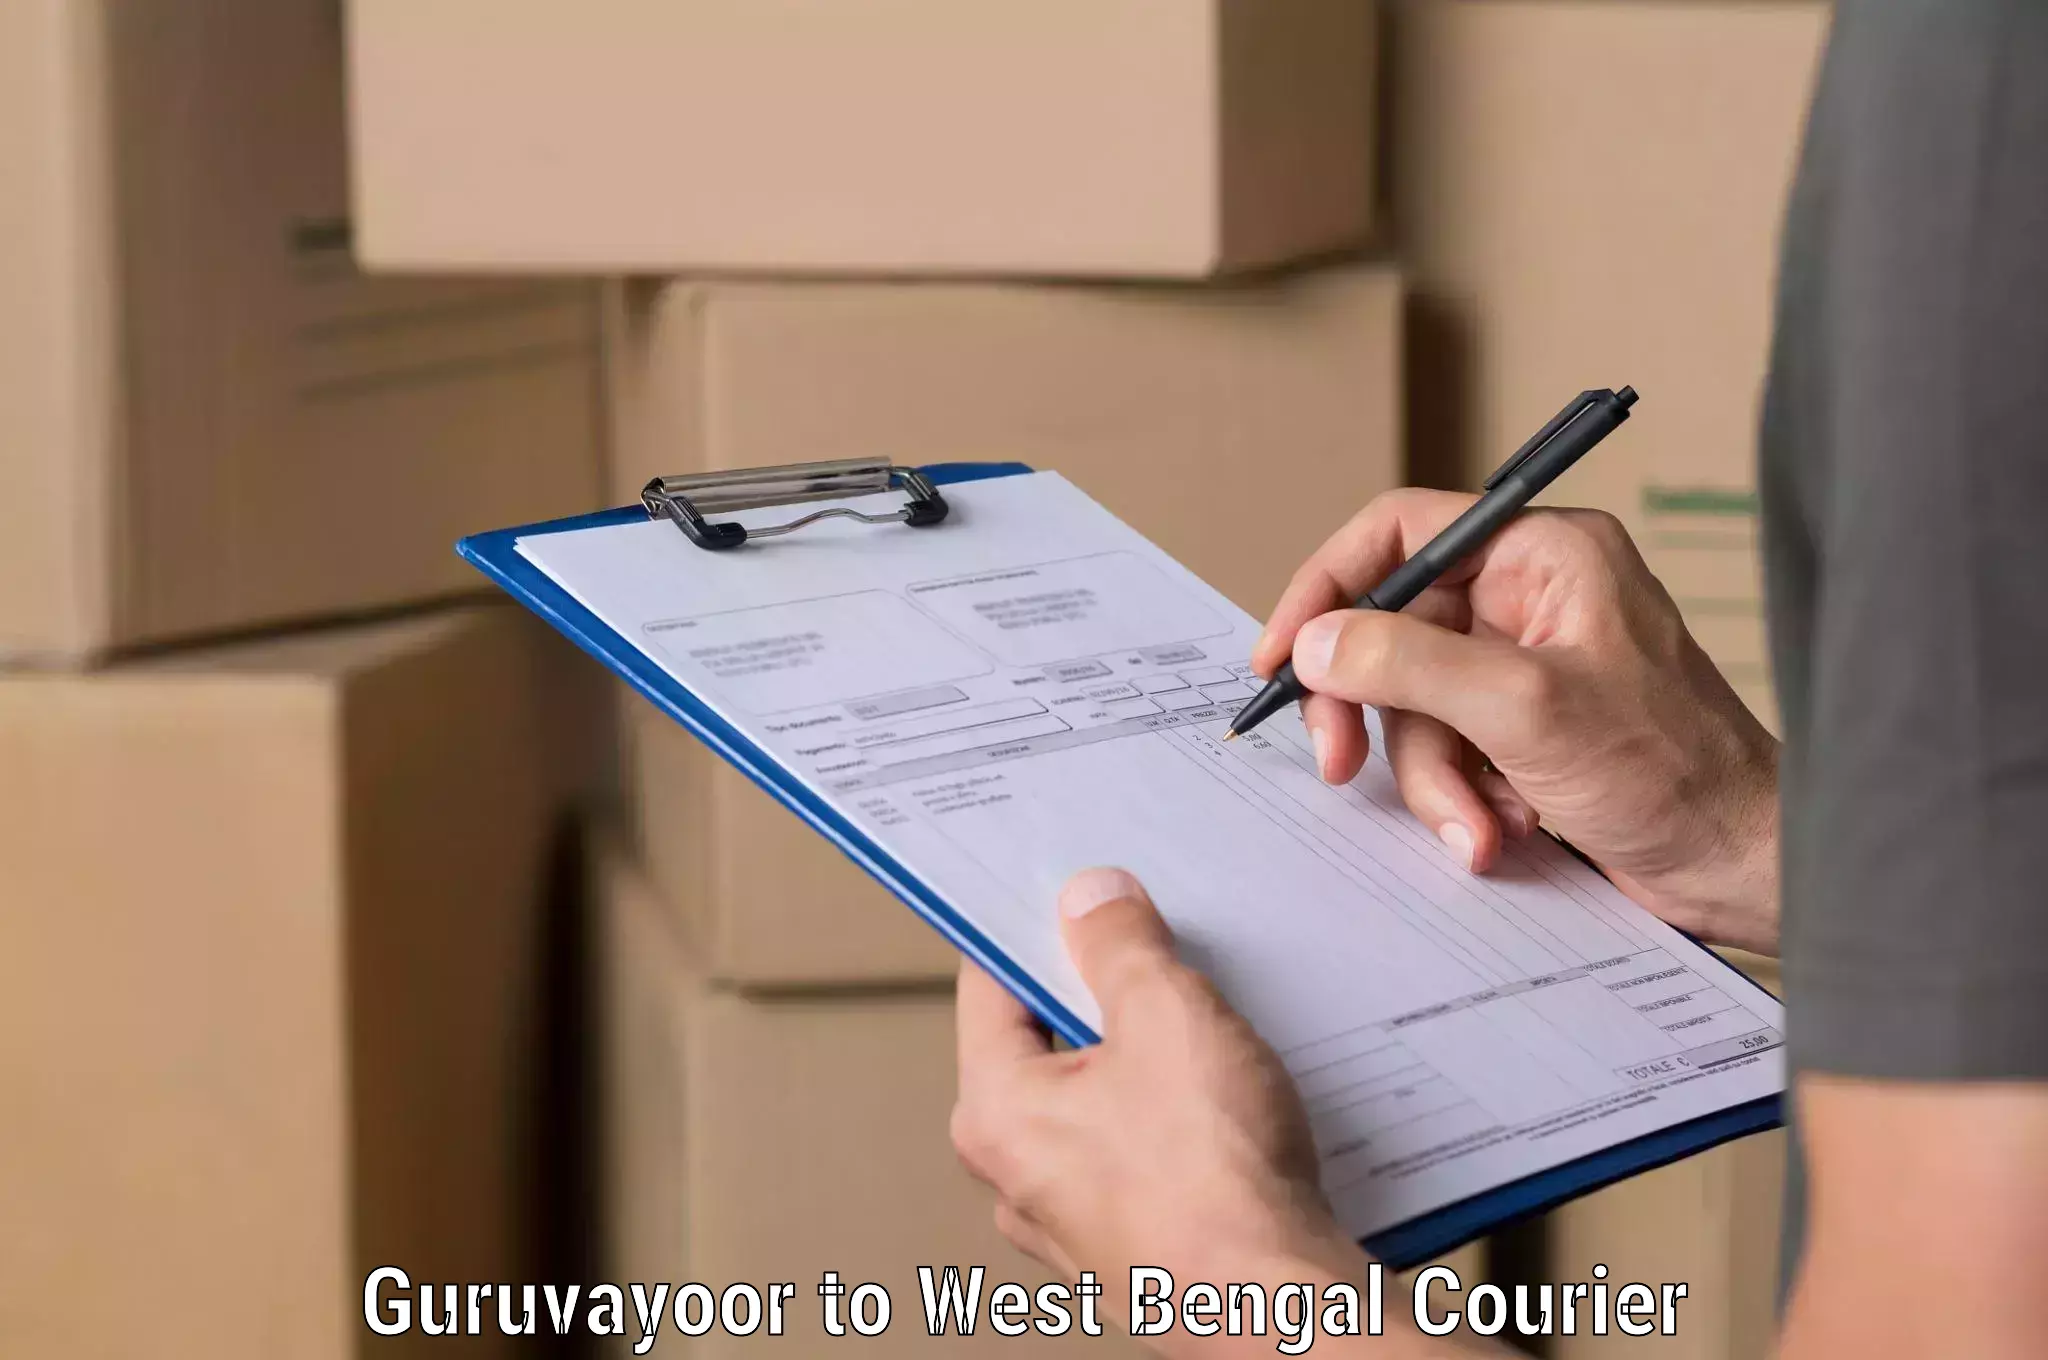 Cargo delivery service Guruvayoor to Malda